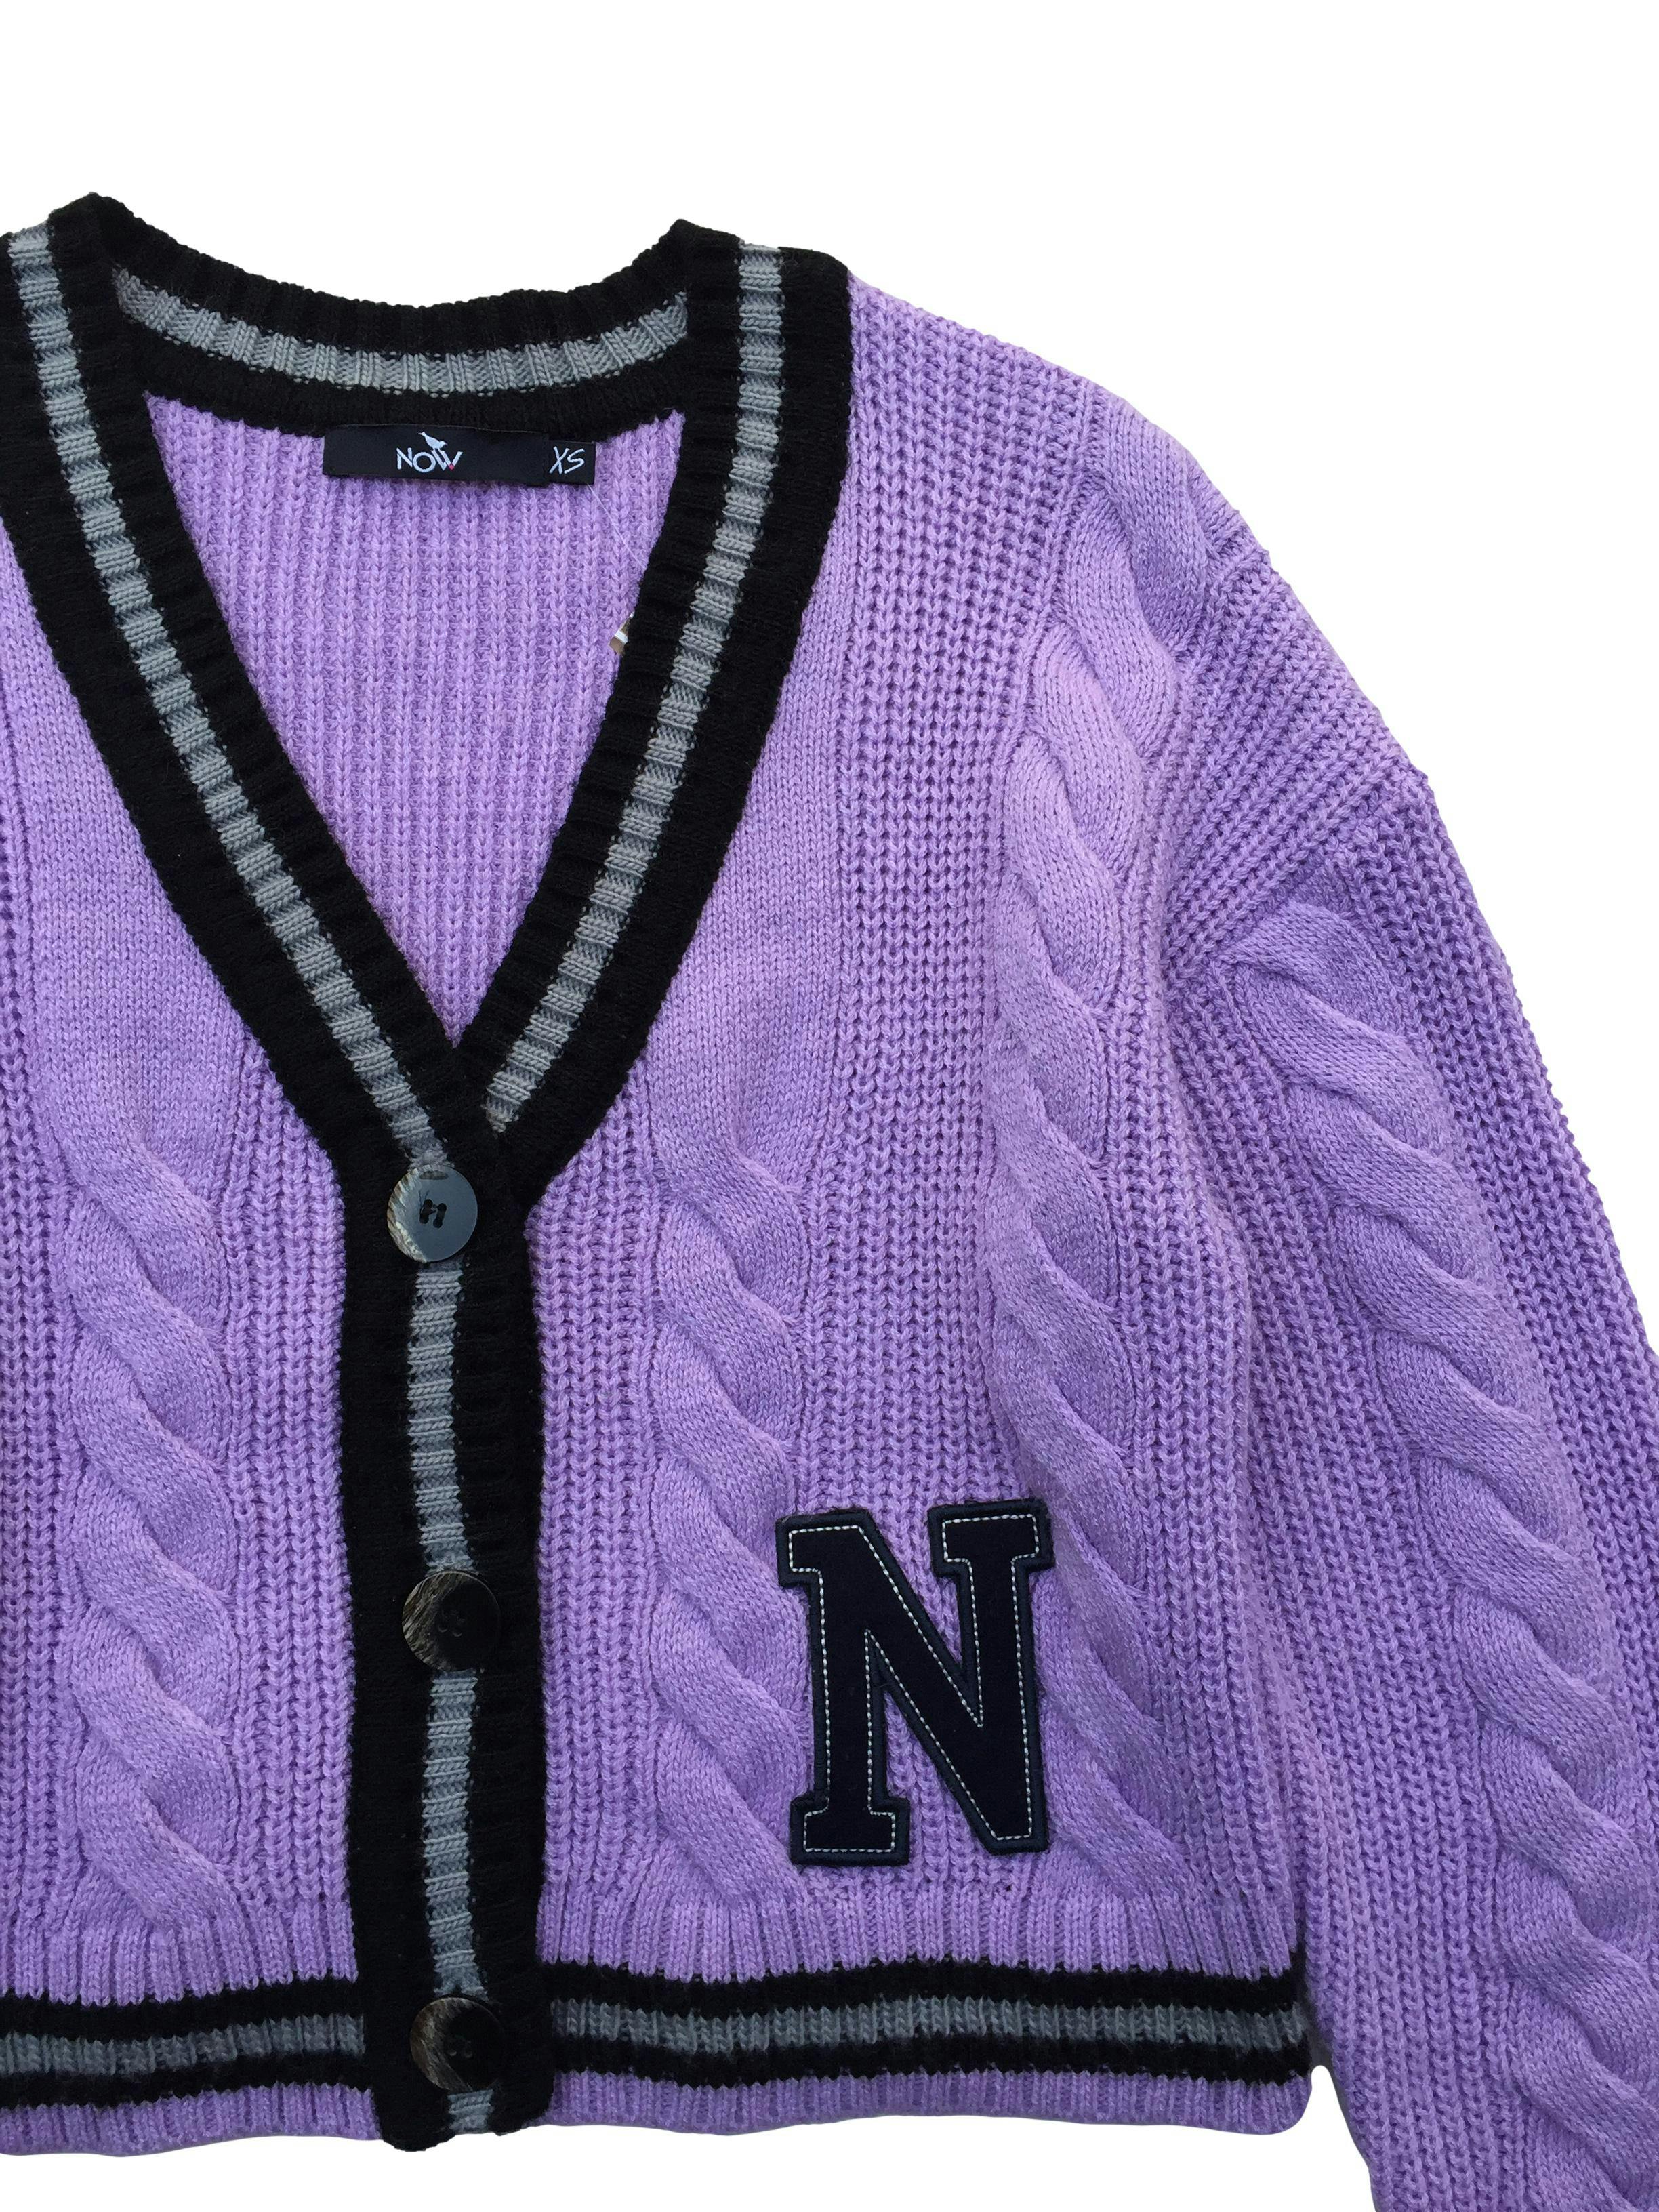 Cardigan Now oversized tejido lila con bordes negros, botones delanteros y aplicación N. Busto: 110cm, Largo: 45cm